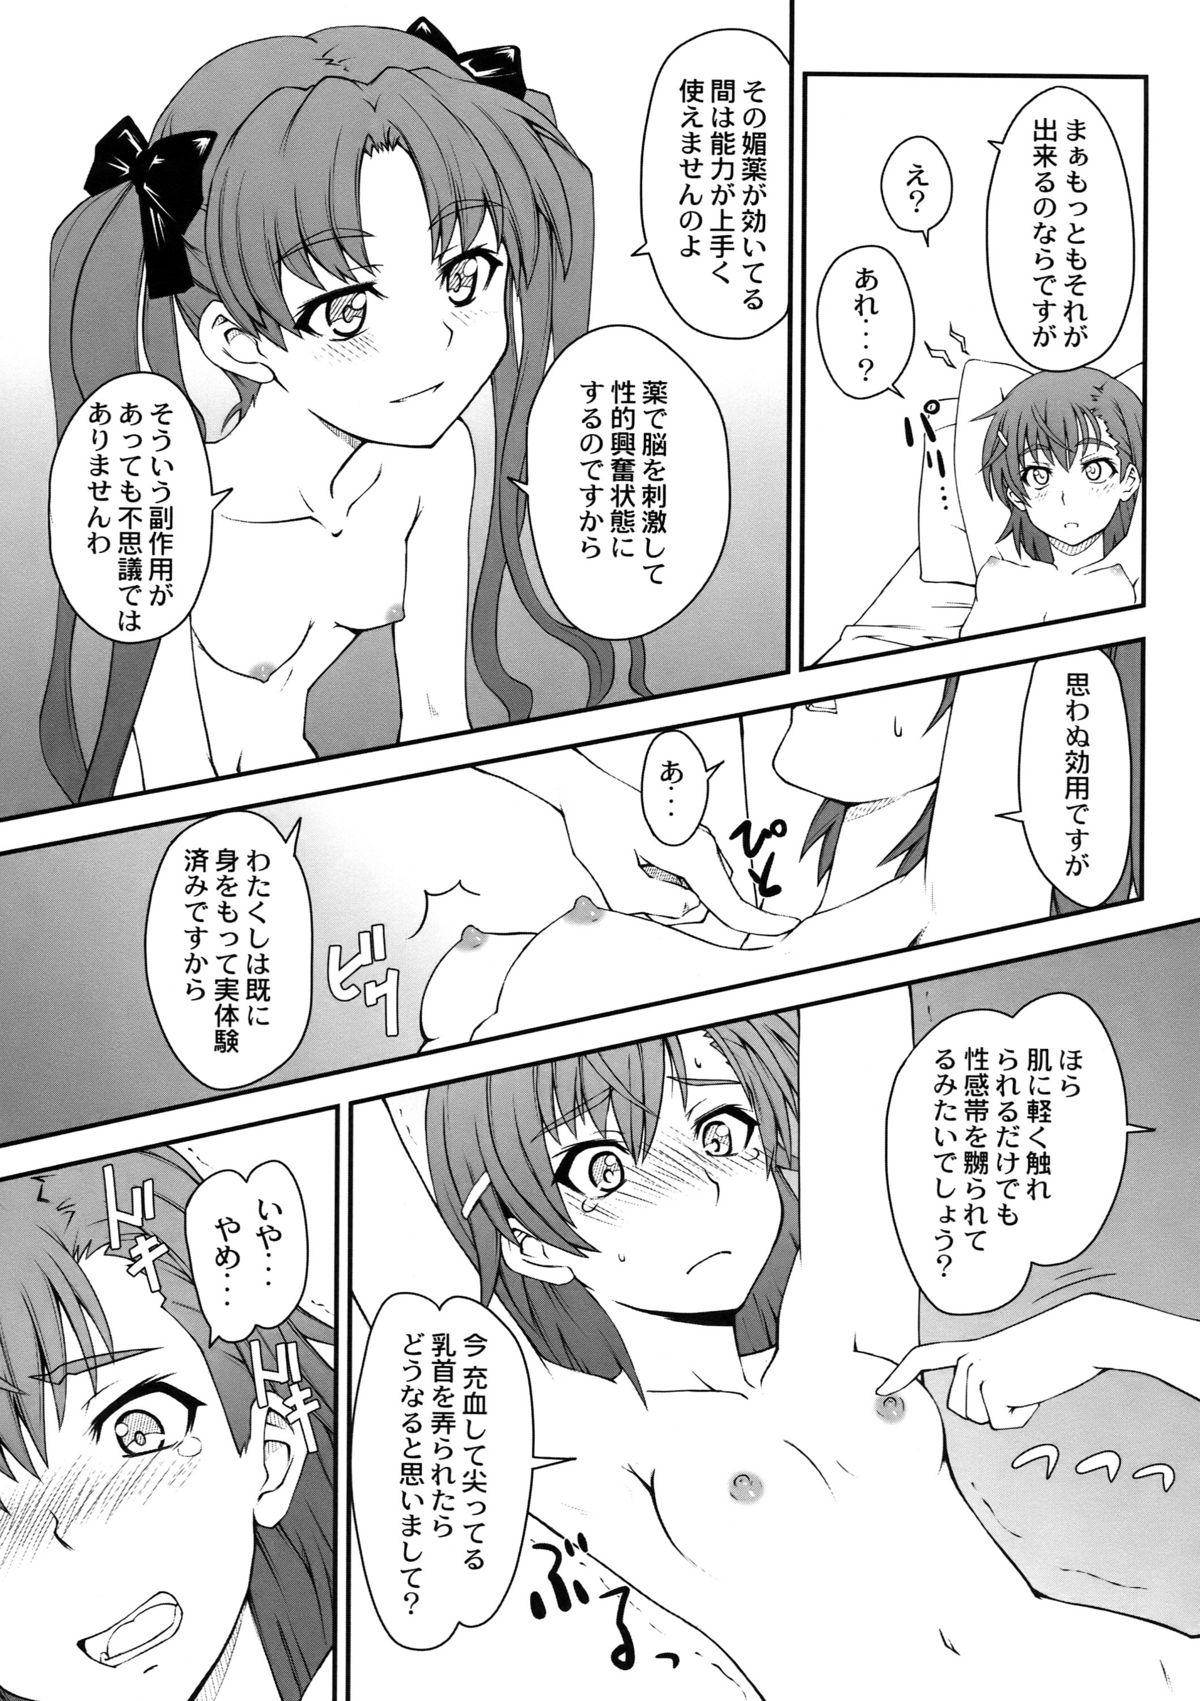 Gay Deepthroat Onnanoko Doushi toka Suki dakara! 2 - Toaru kagaku no railgun Indoor - Page 11